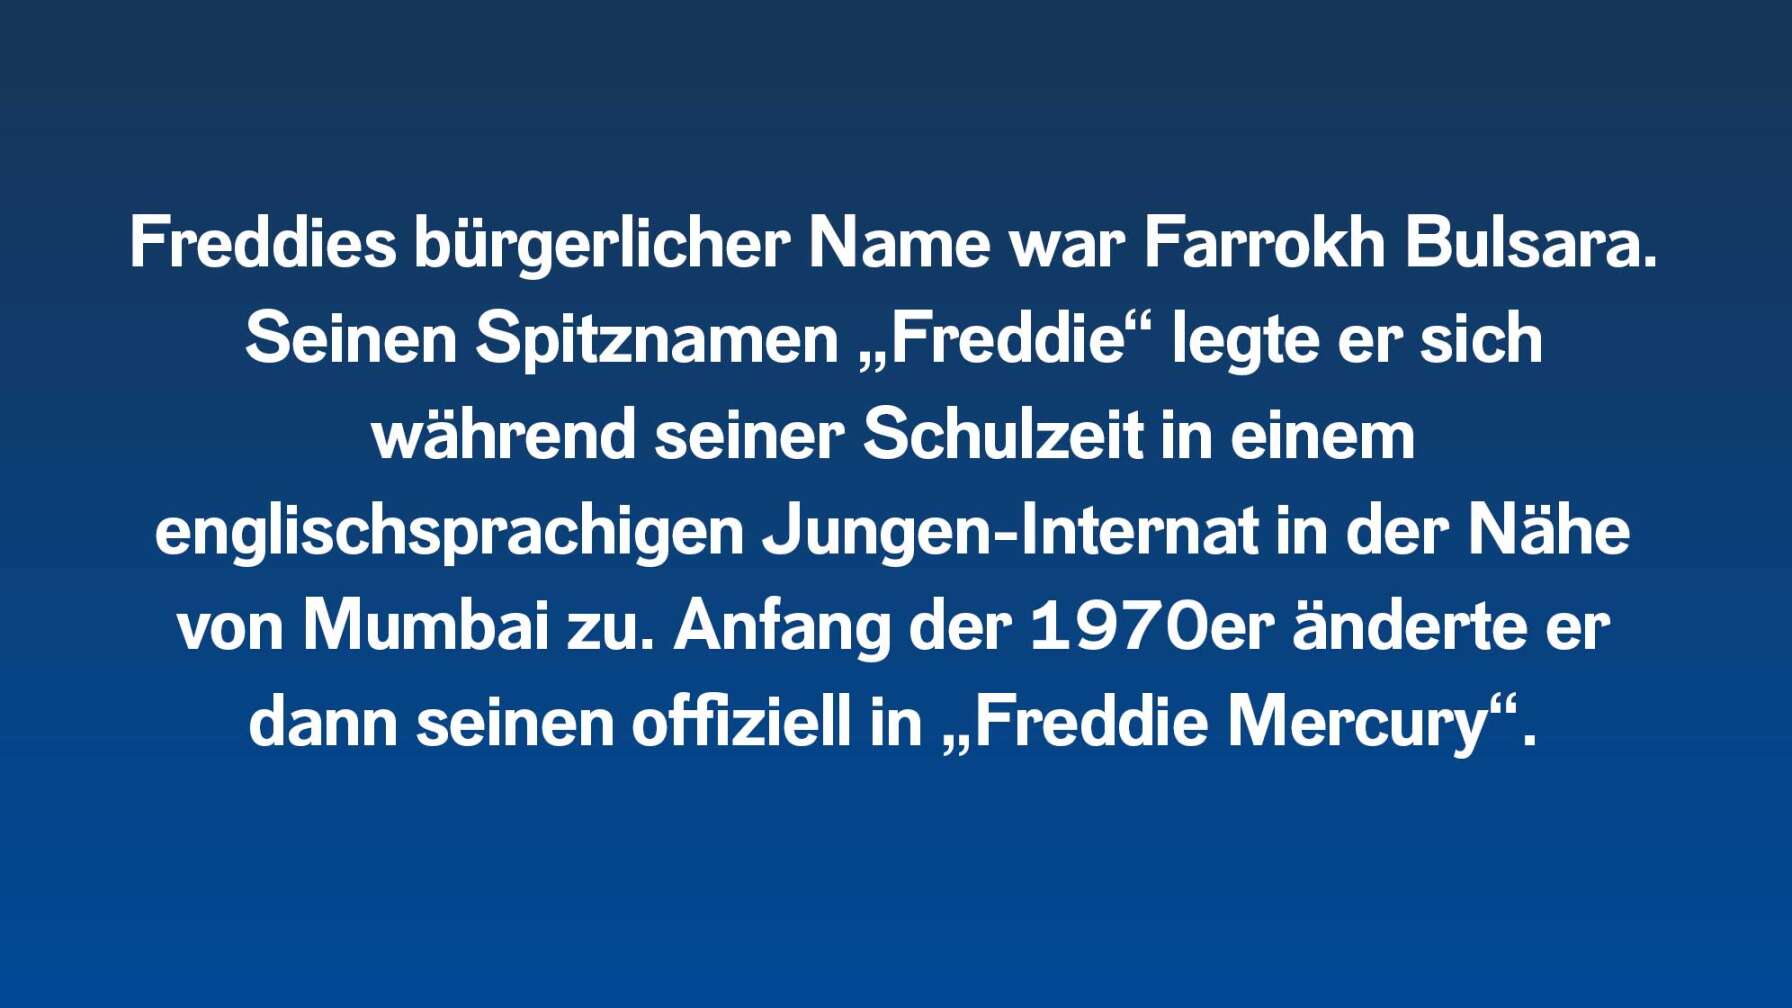 Freddies bürgerlicher Name war Farrokh Bulsara. Seinen Spitznamen „Freddie“ legte er sich während seiner Schulzeit in einem englischsprachigen Jungen-Internat in der Nähe von Mumbai zu. Anfang der 1970er änderte er dann seinen offiziell in „Freddie Mercury“.